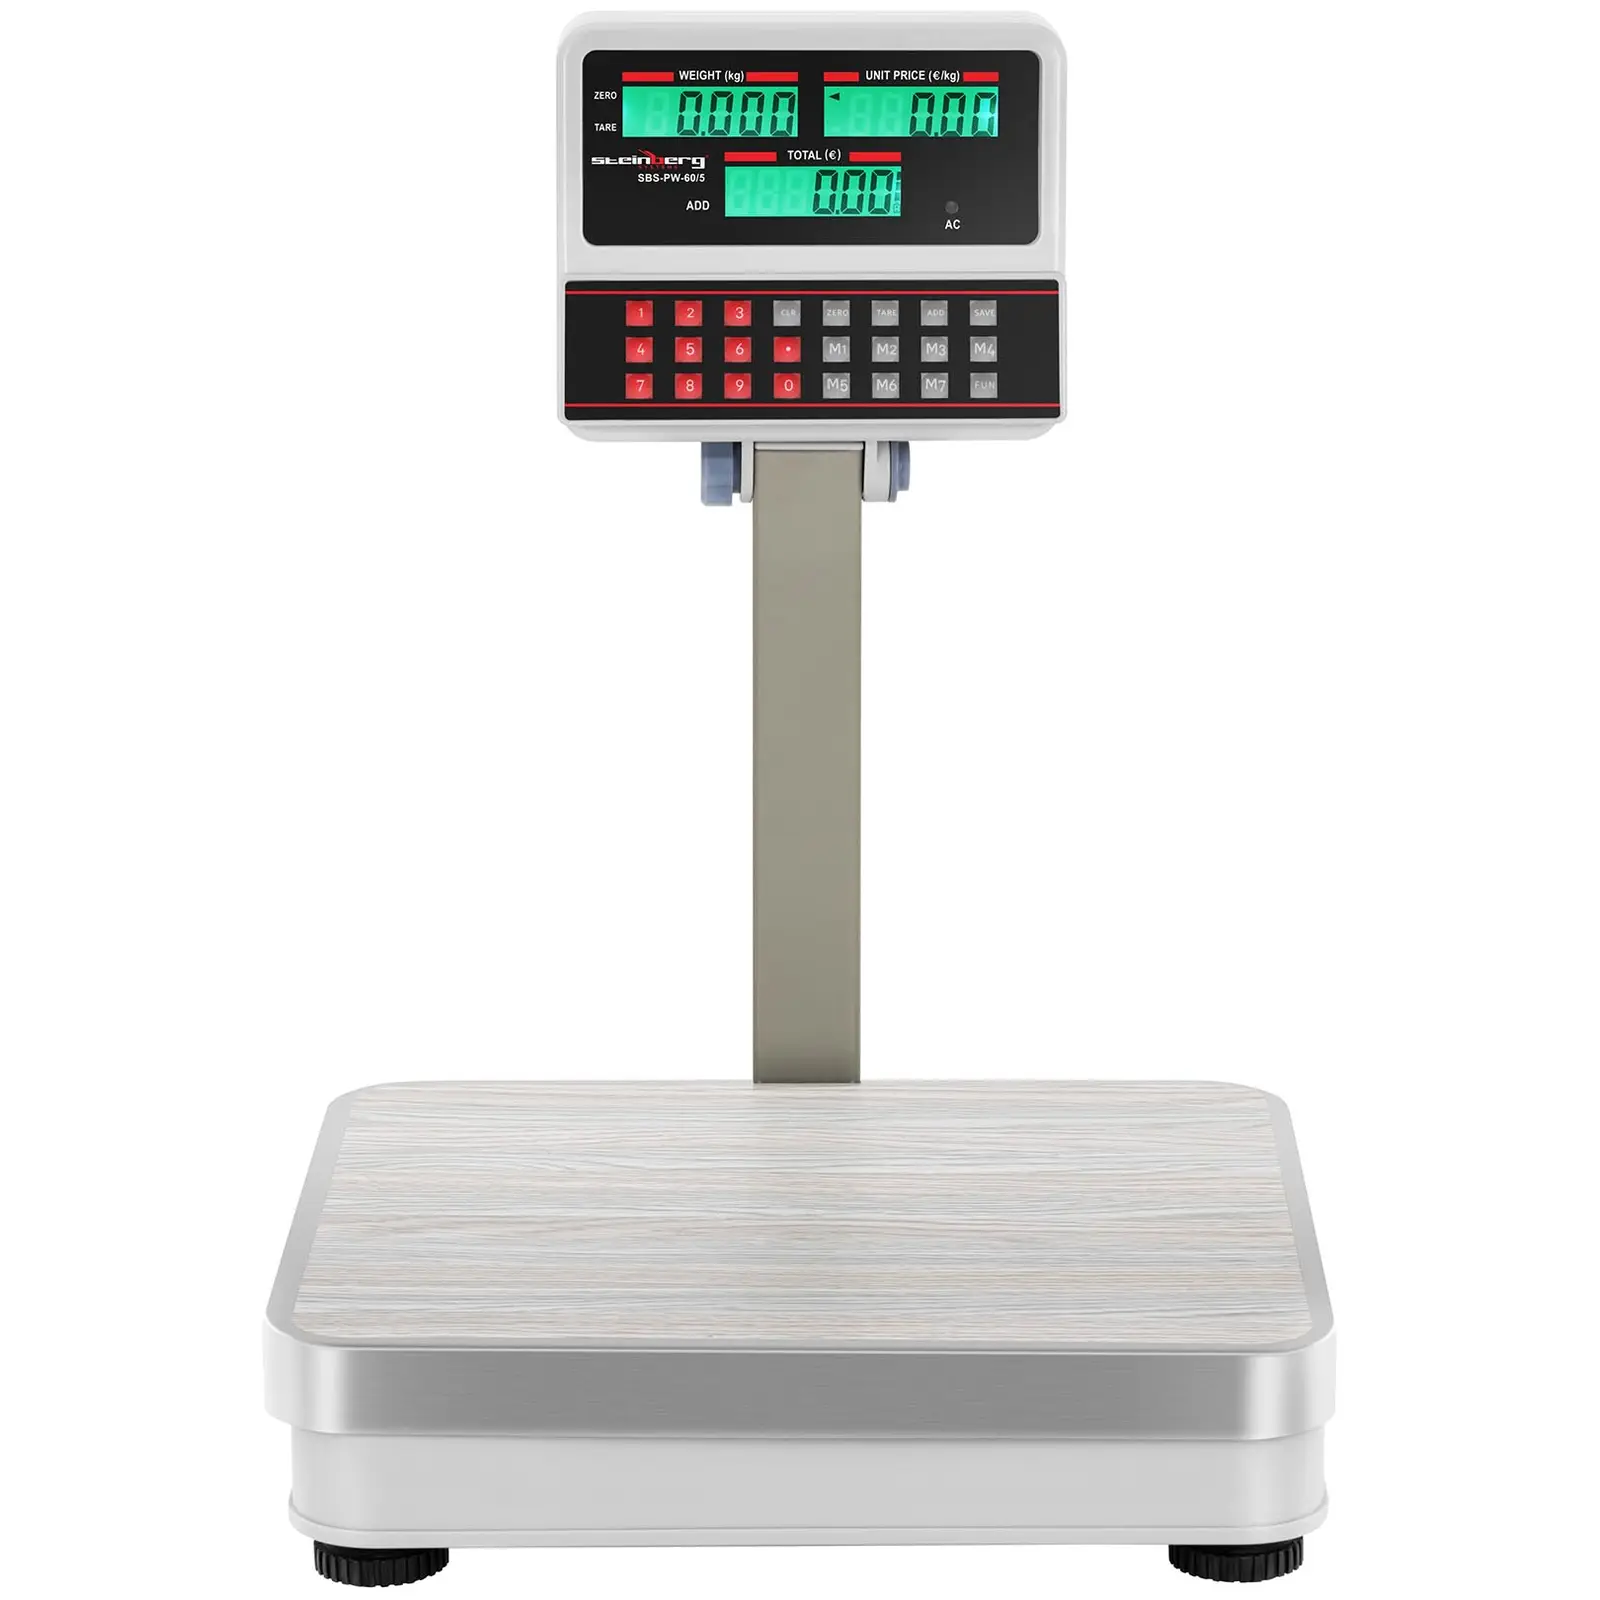 Balança de pesagem digital com ecrã LCD elevado - 60 kg / 5 g